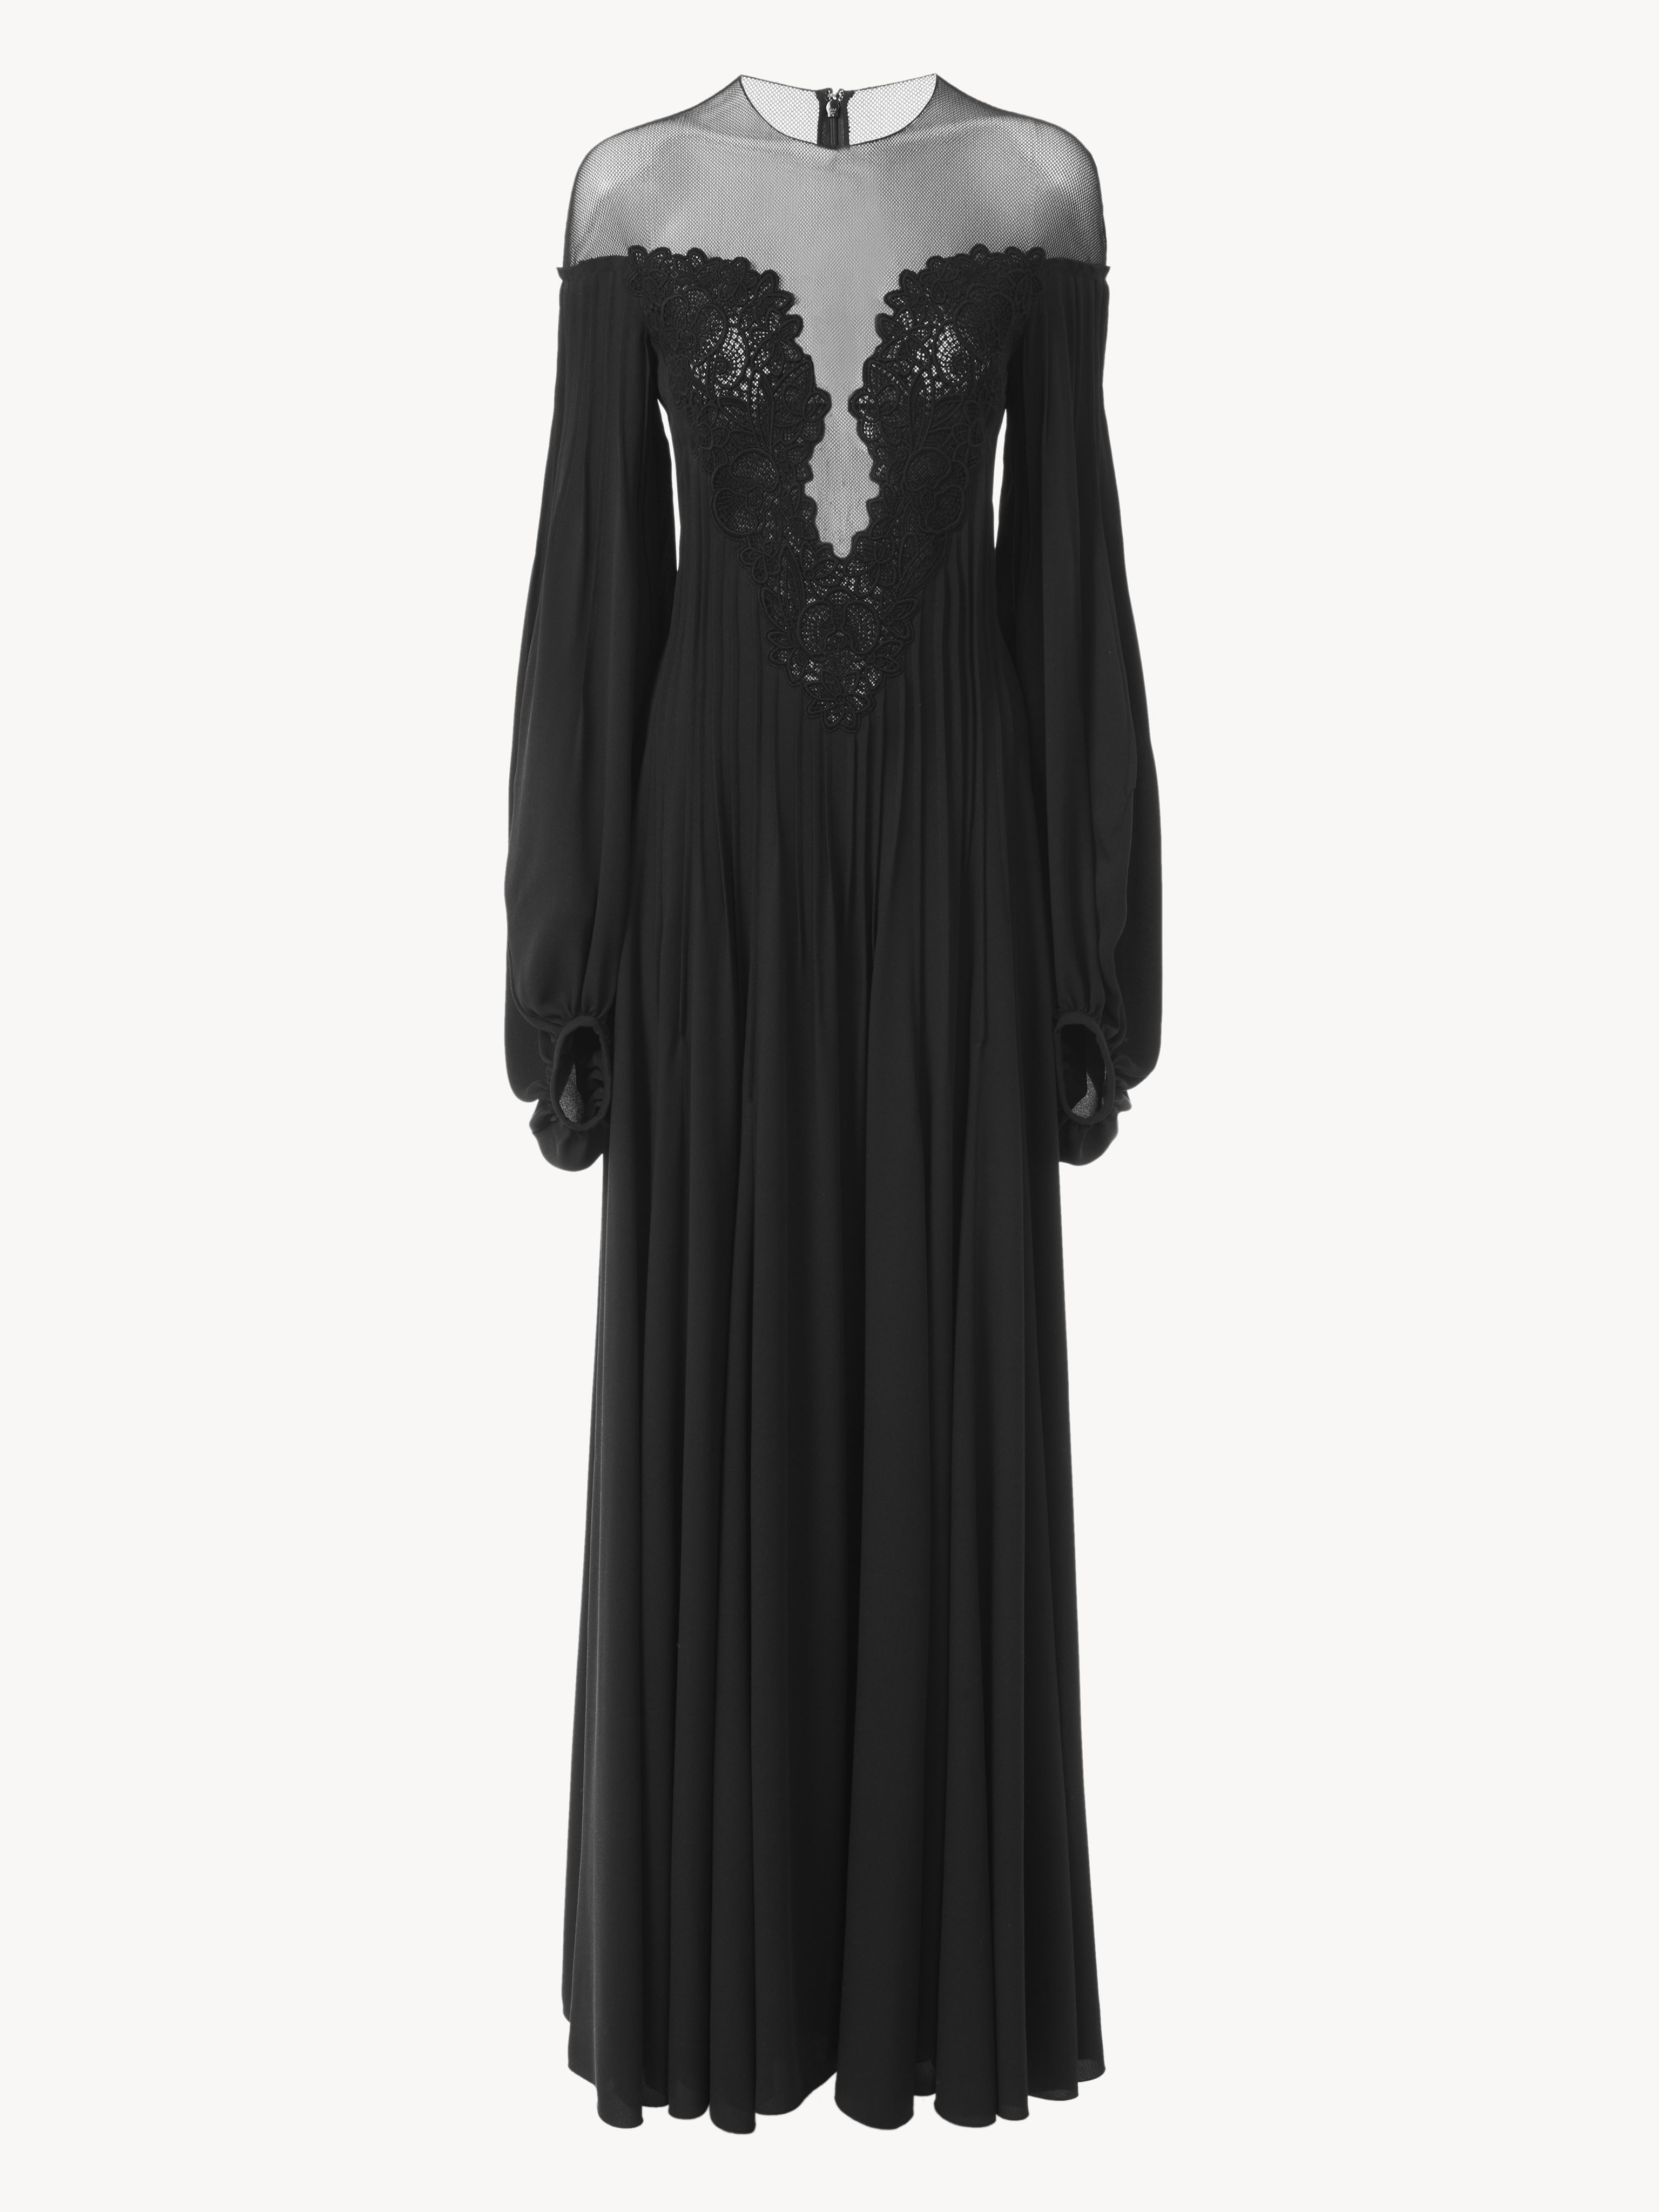 Chloé Embellished Evening Dress Black Size 8 100% Silk In Noir